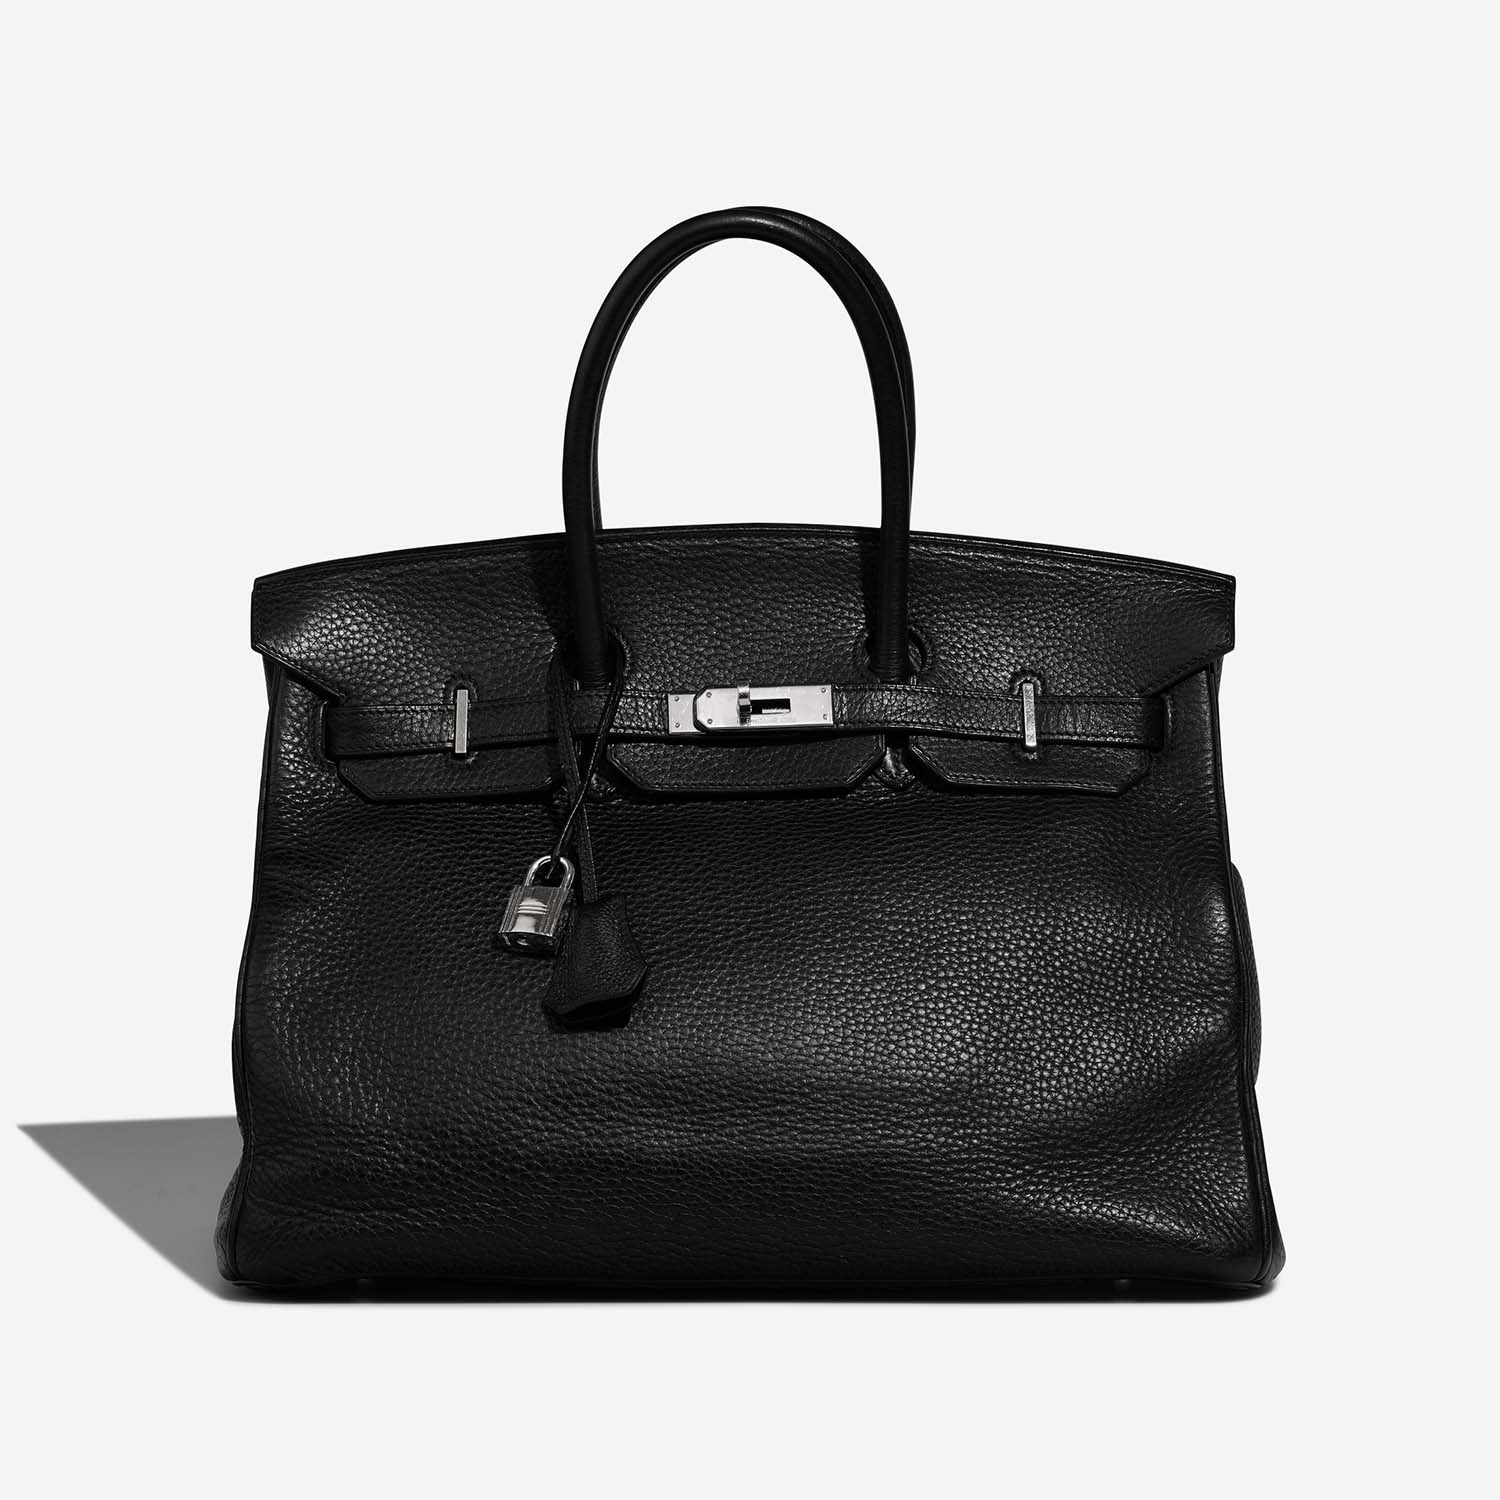 Hermès Birkin 35 Schwarz 2F | Verkaufen Sie Ihre Designertasche auf Saclab.com